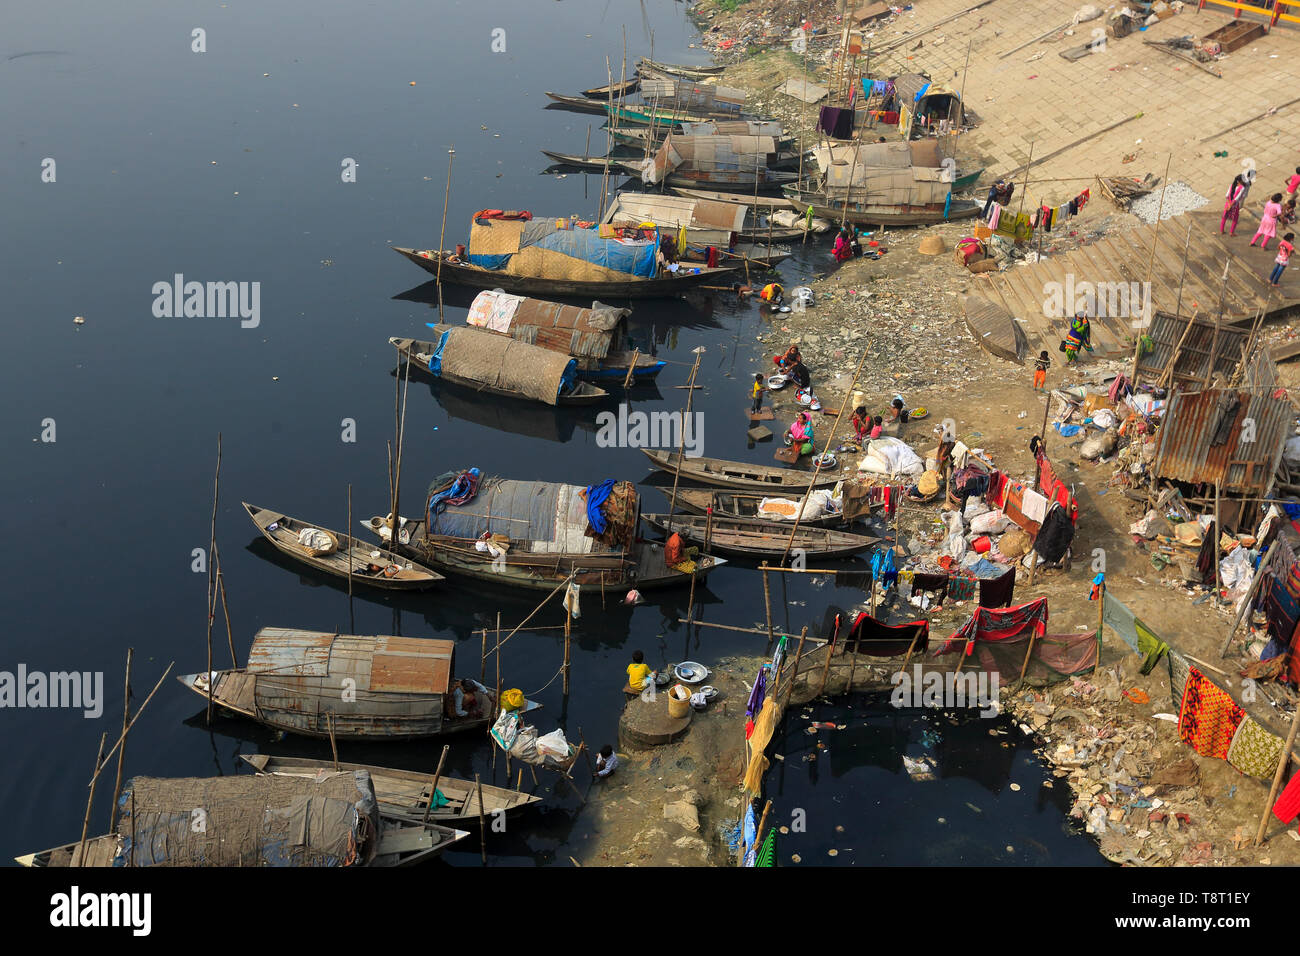 Femmes gitanes et les filles, qui vivent sur les bateaux, faire tout le nettoyage domestique dans le pitch-dark, l'eau polluée de la rivière Turag à Tongi à Gazipur. Banque D'Images